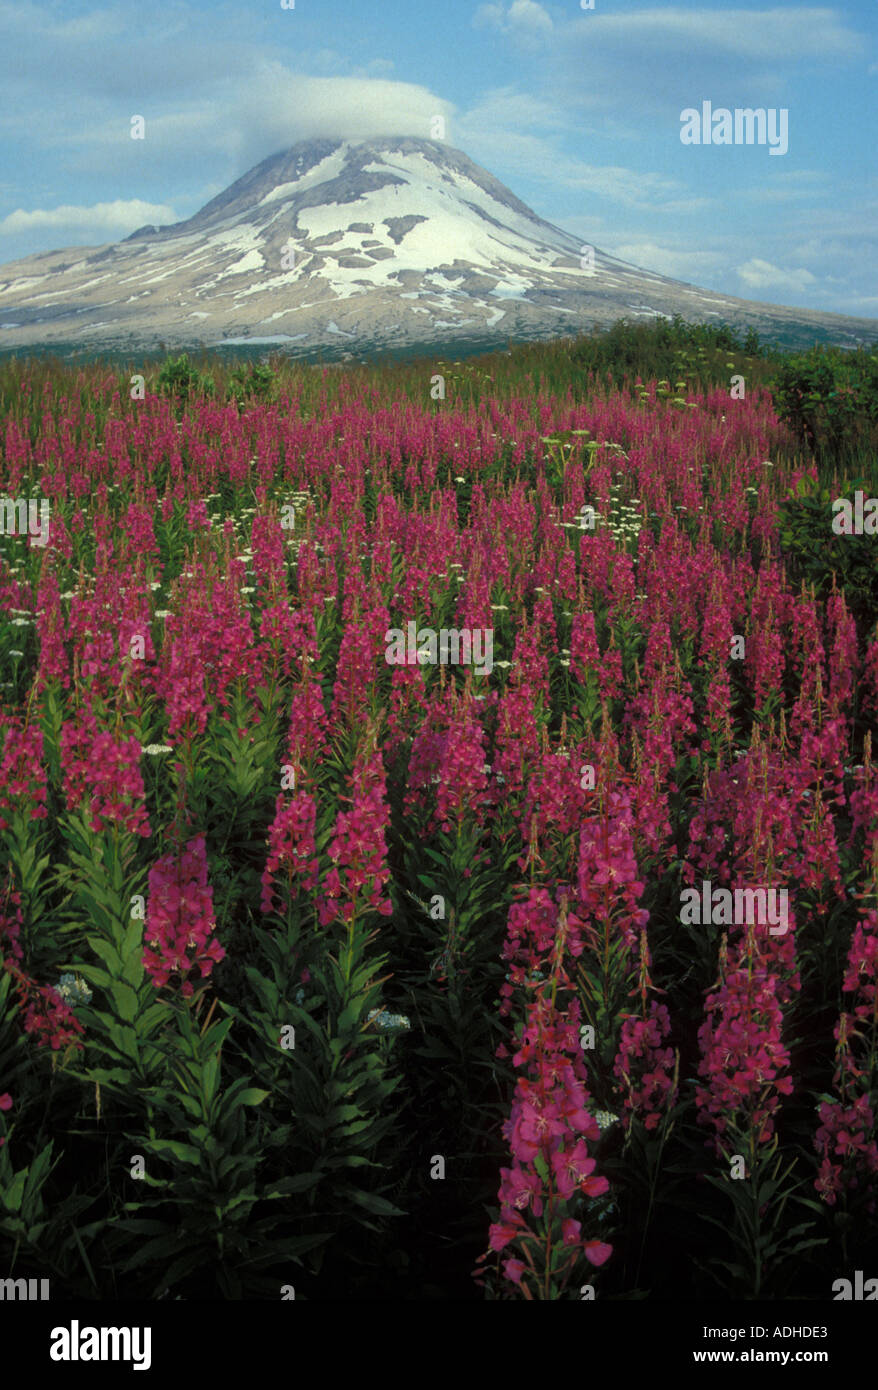 Agostino vulcano e pacifico fireweed anello di fuoco Cook Inlet Alaska Foto Stock